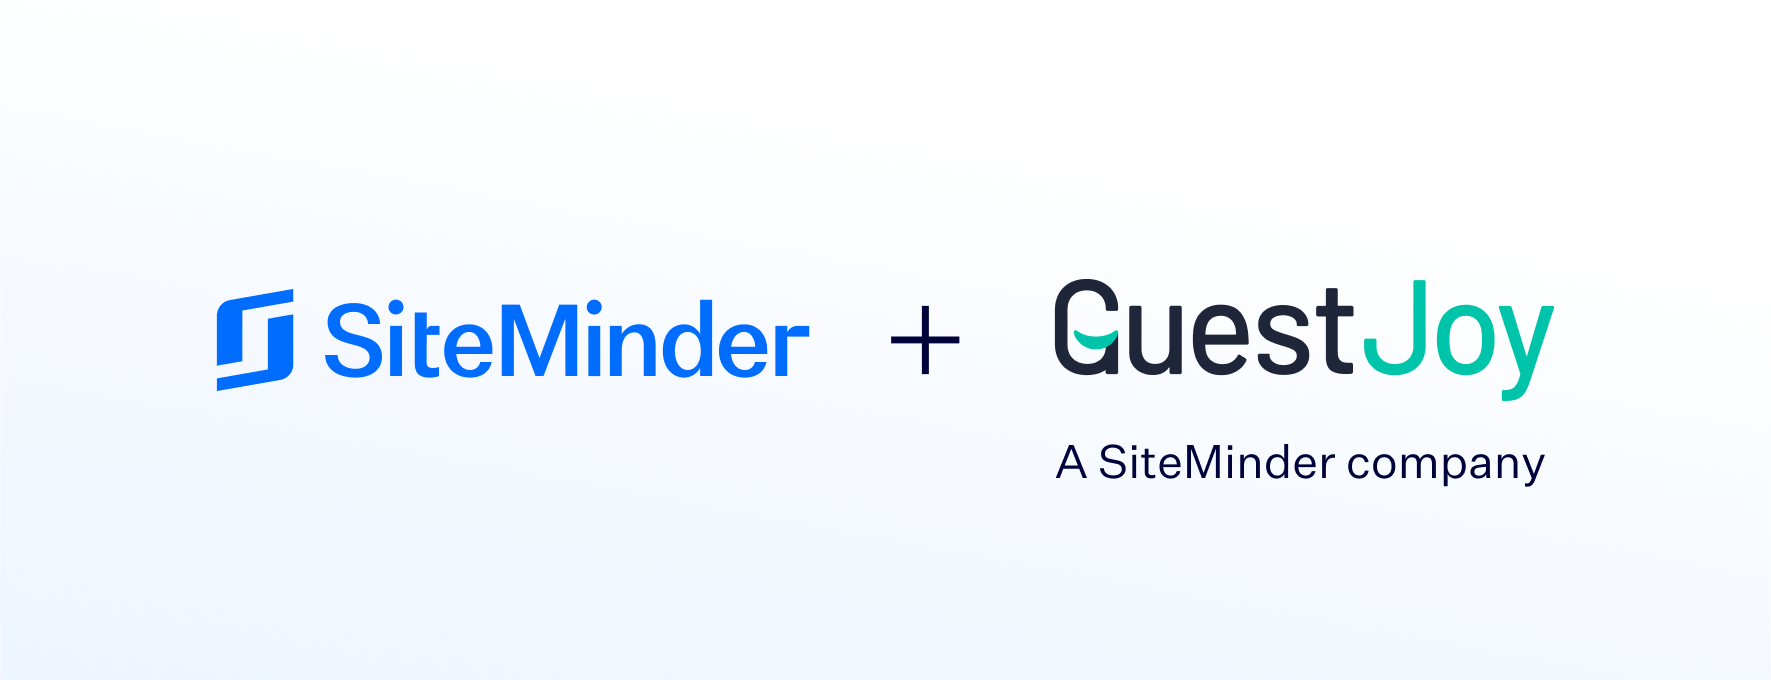 SiteMinder ผู้นำเทคโนโลยีโรงแรมระดับโลก ต่อยอดการเติบโตแพลตฟอร์มโฮเทลคอมเมิร์ซ โดยการประกาศเข้าซื้อ GuestJoy